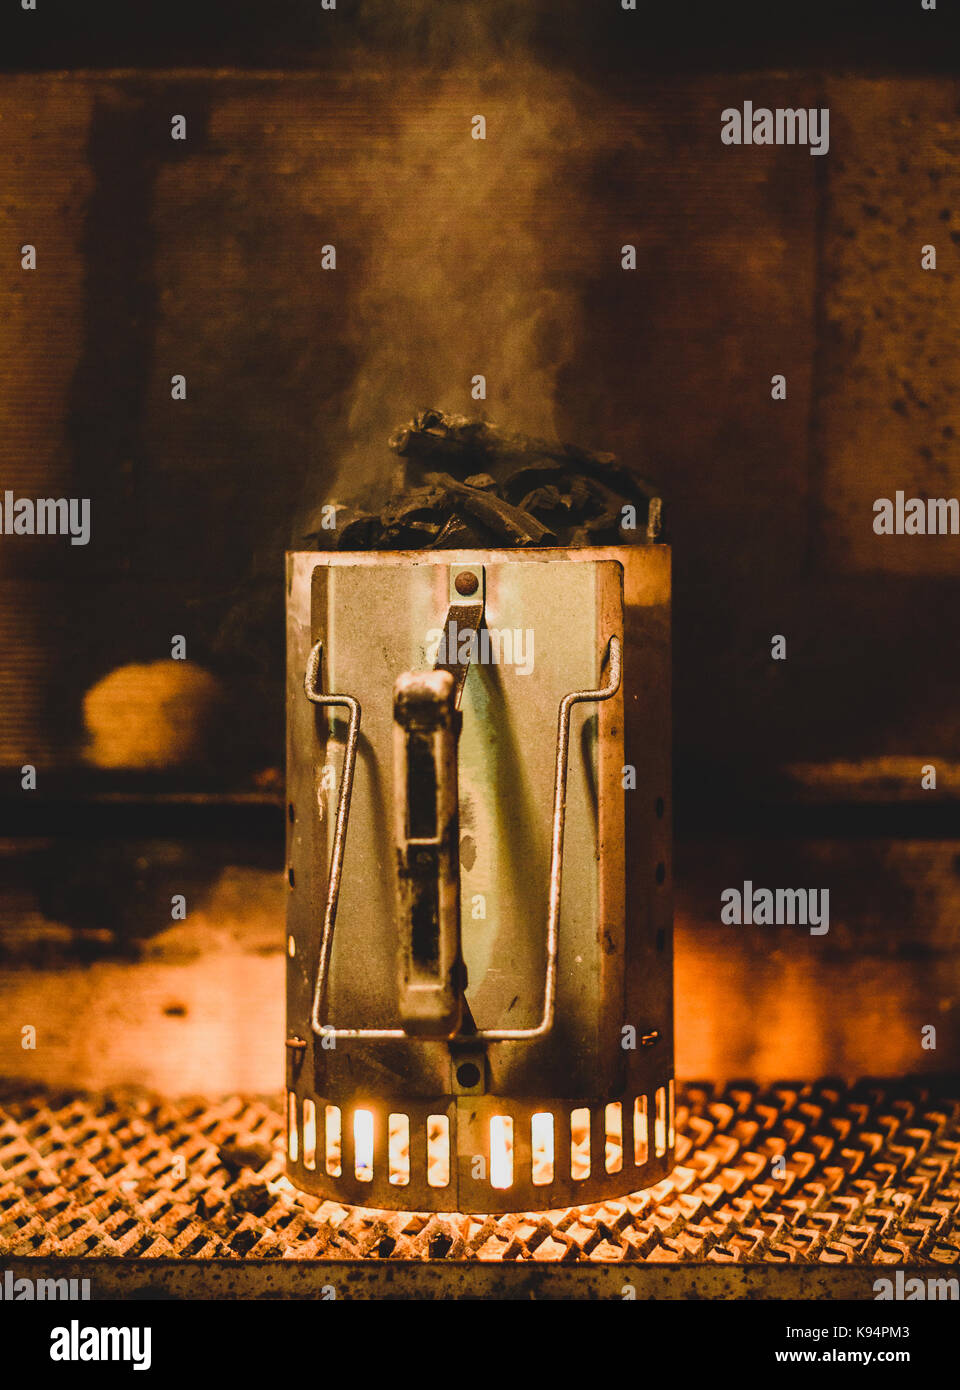 Vorbereitung Grill Kohle oder Briketts in Chimney Starter in der Nacht. Starten Kohlen für Grill innerhalb von Kamin mit speziellen Fire Starter. Flammen auf Stockfoto